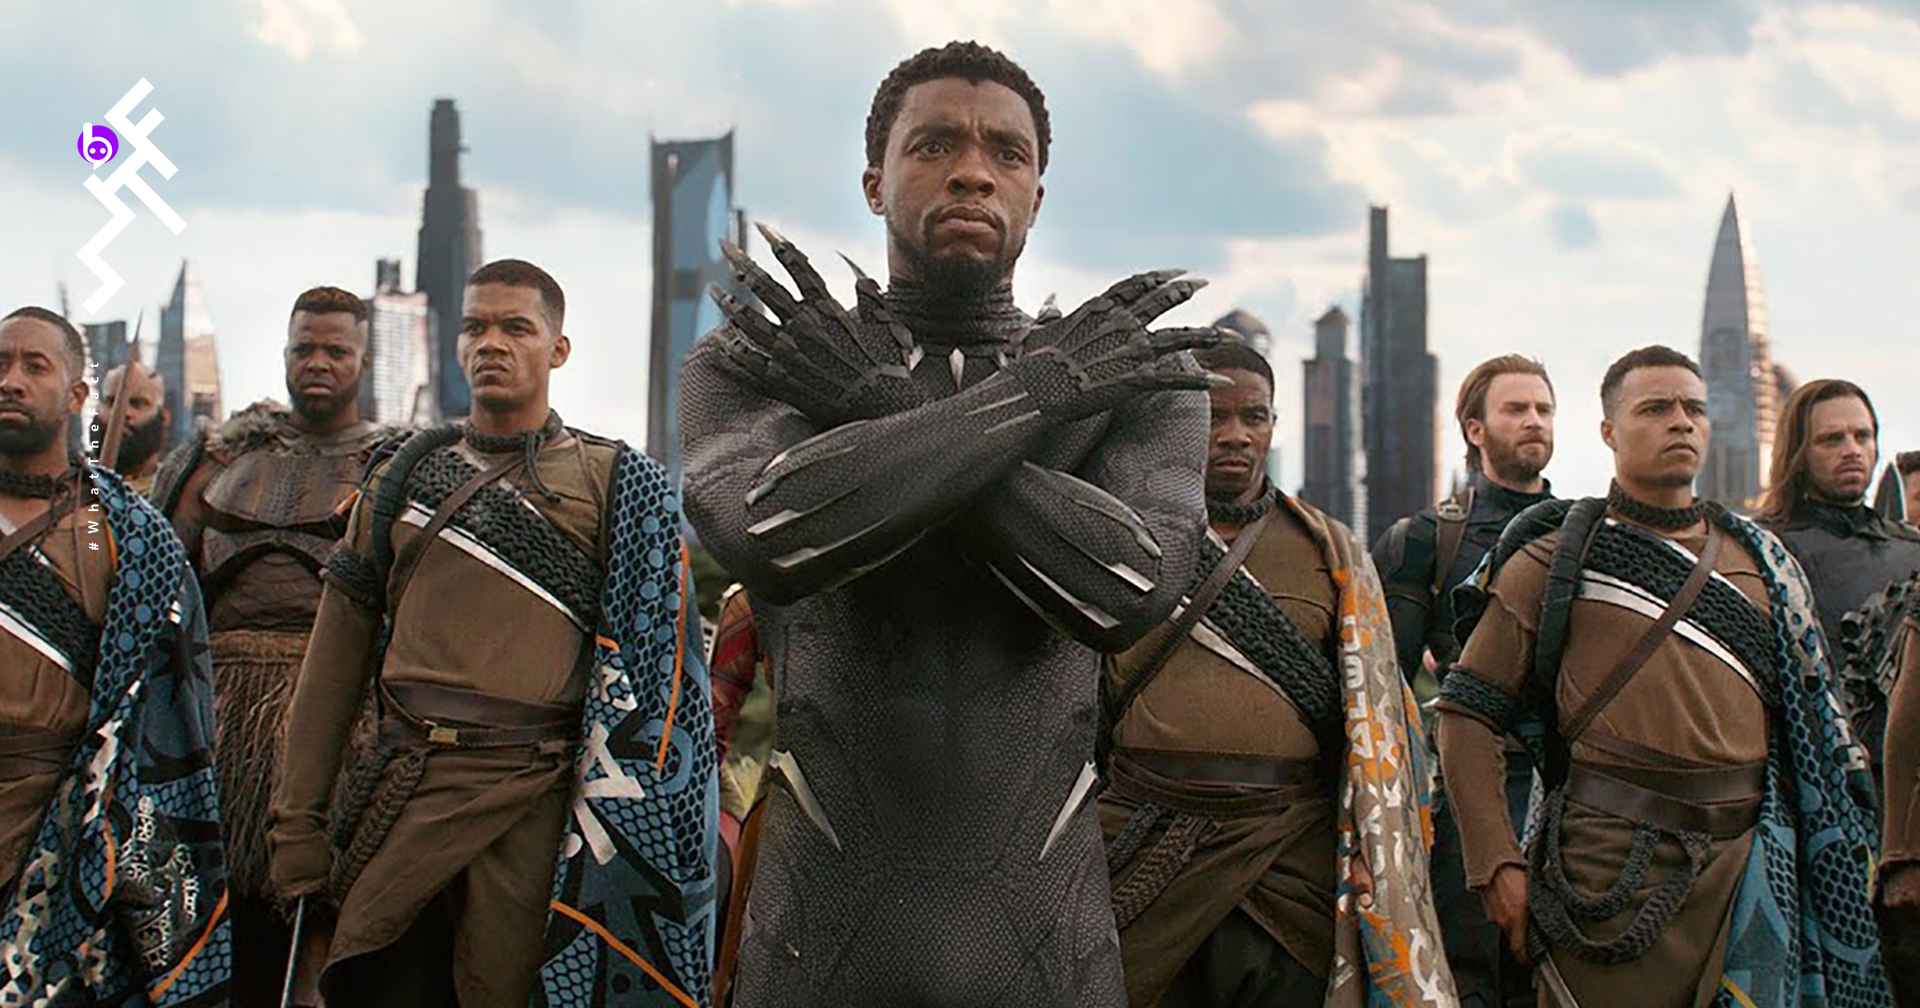 จักรวาล Black Panther เตรียมสร้างเป็นซีรีส์ The Kingdom of Wakanda ได้ผู้กำกับฉบับหนังมาคุมงานสร้าง